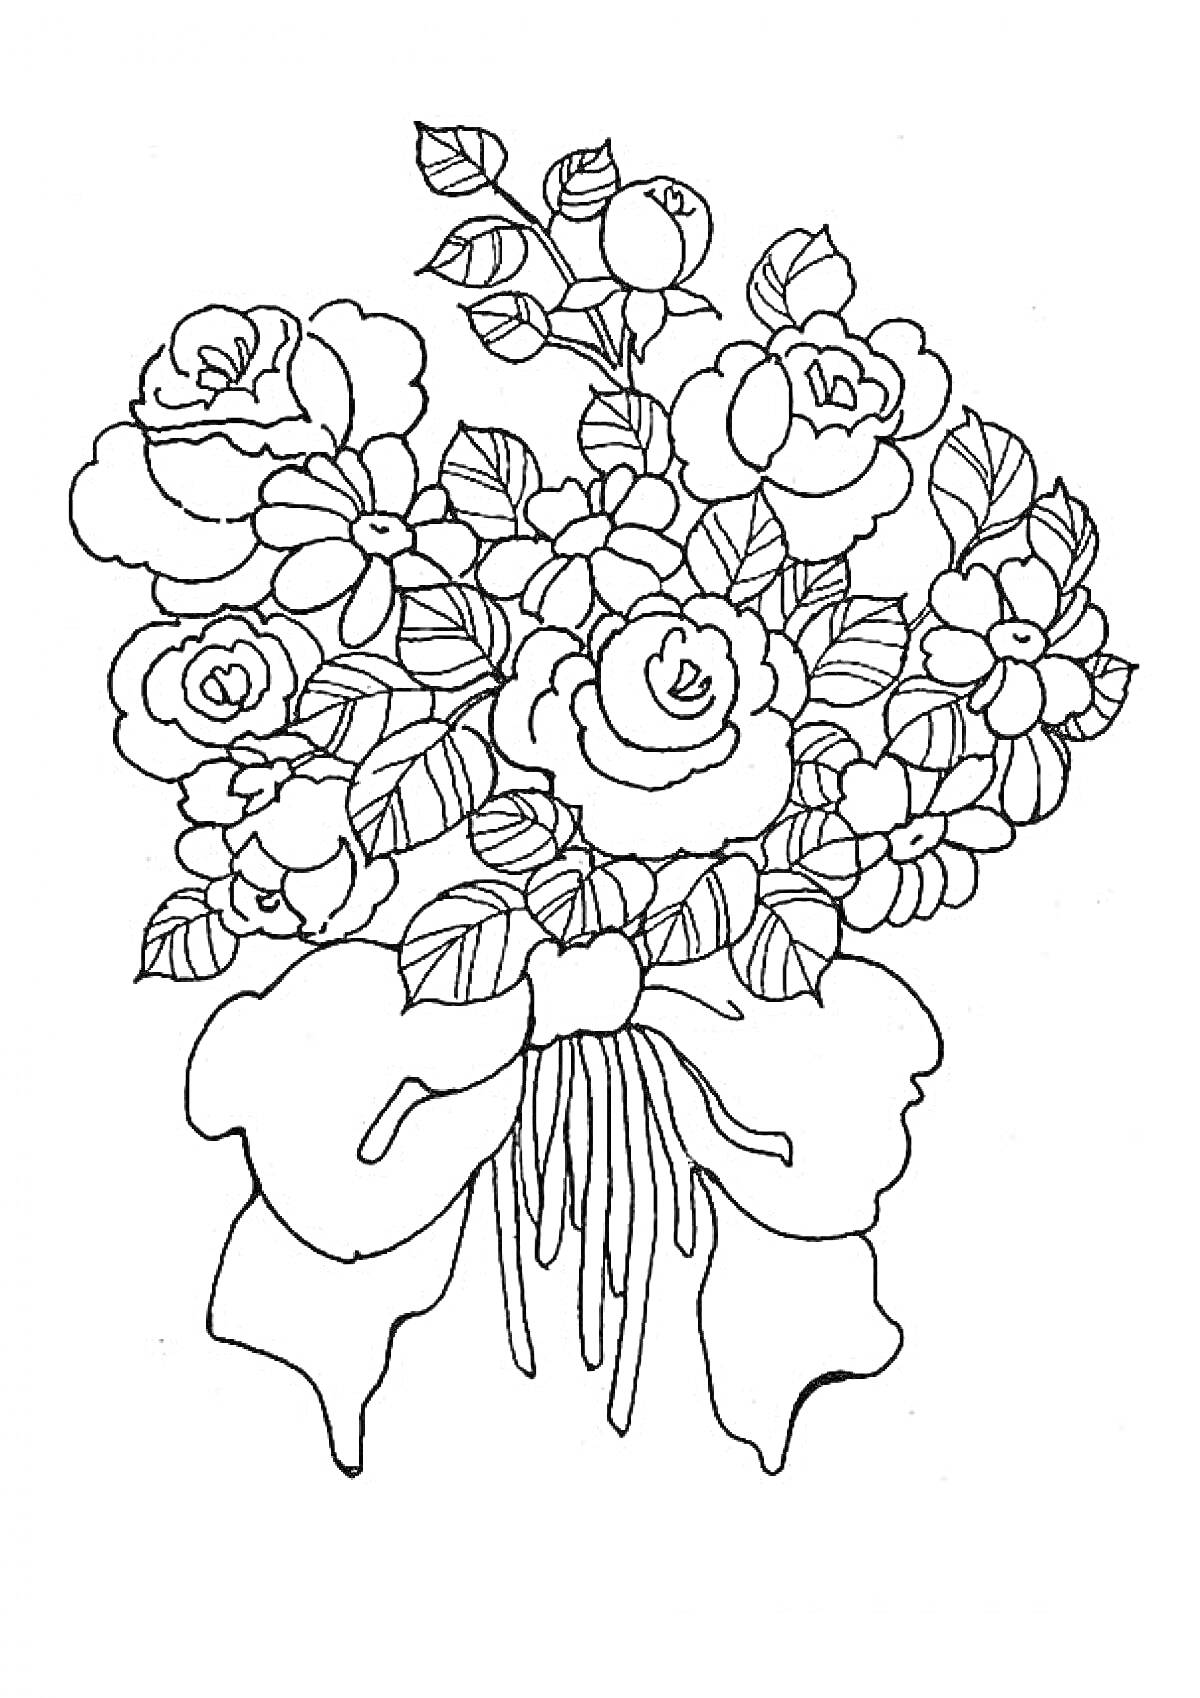 Раскраска Букет цветов с розами, герберами и бантом